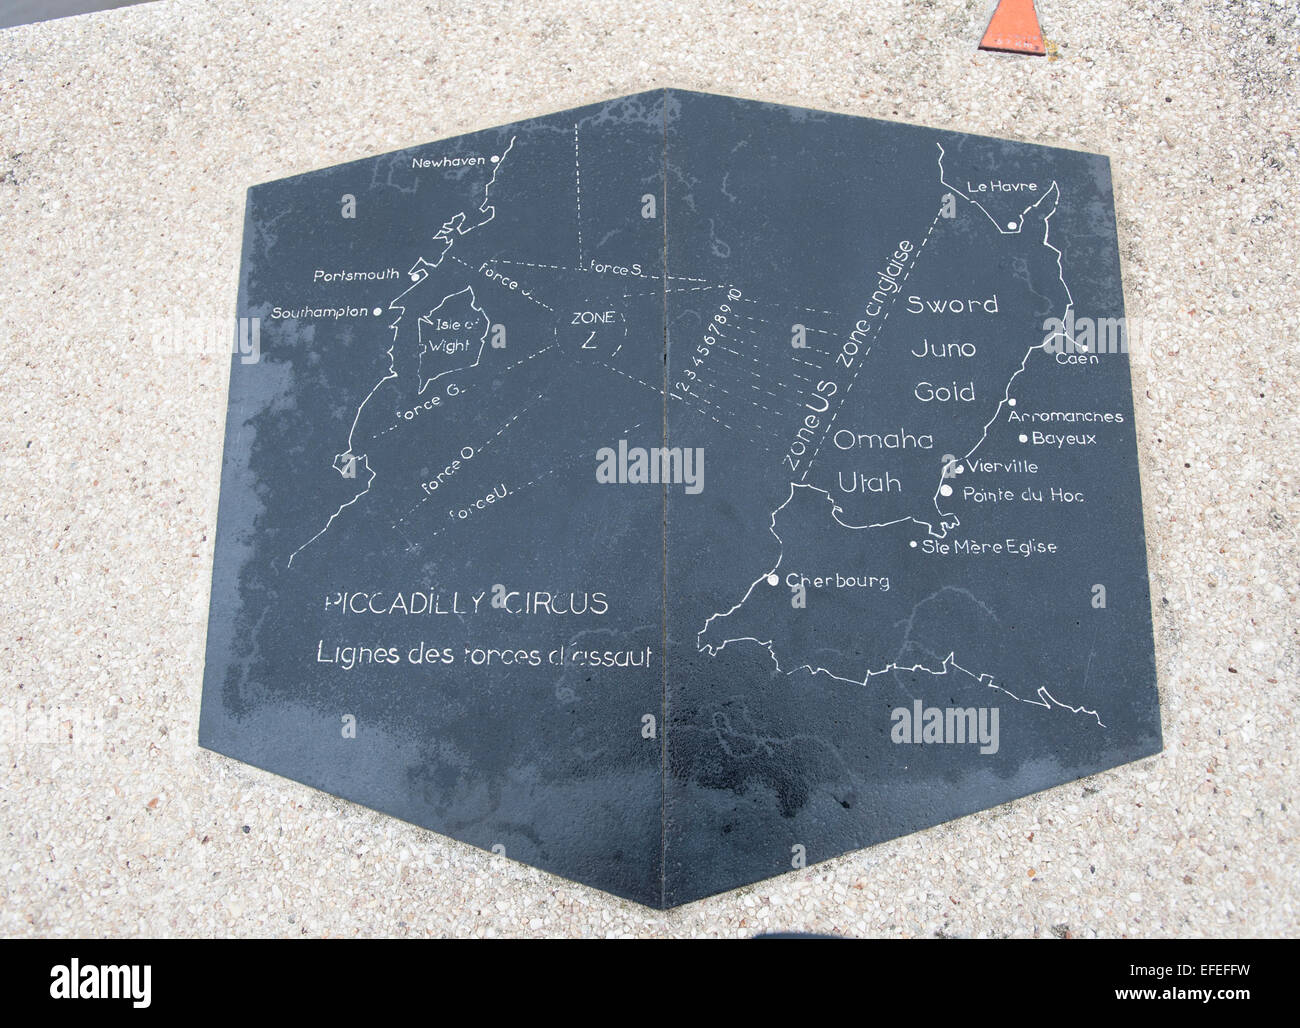 Mappa che mostra i visitatori della Normandia D-Day siti di atterraggio la posizione dell'oro, Juno e spada spiagge e le forze degli alleati Foto Stock